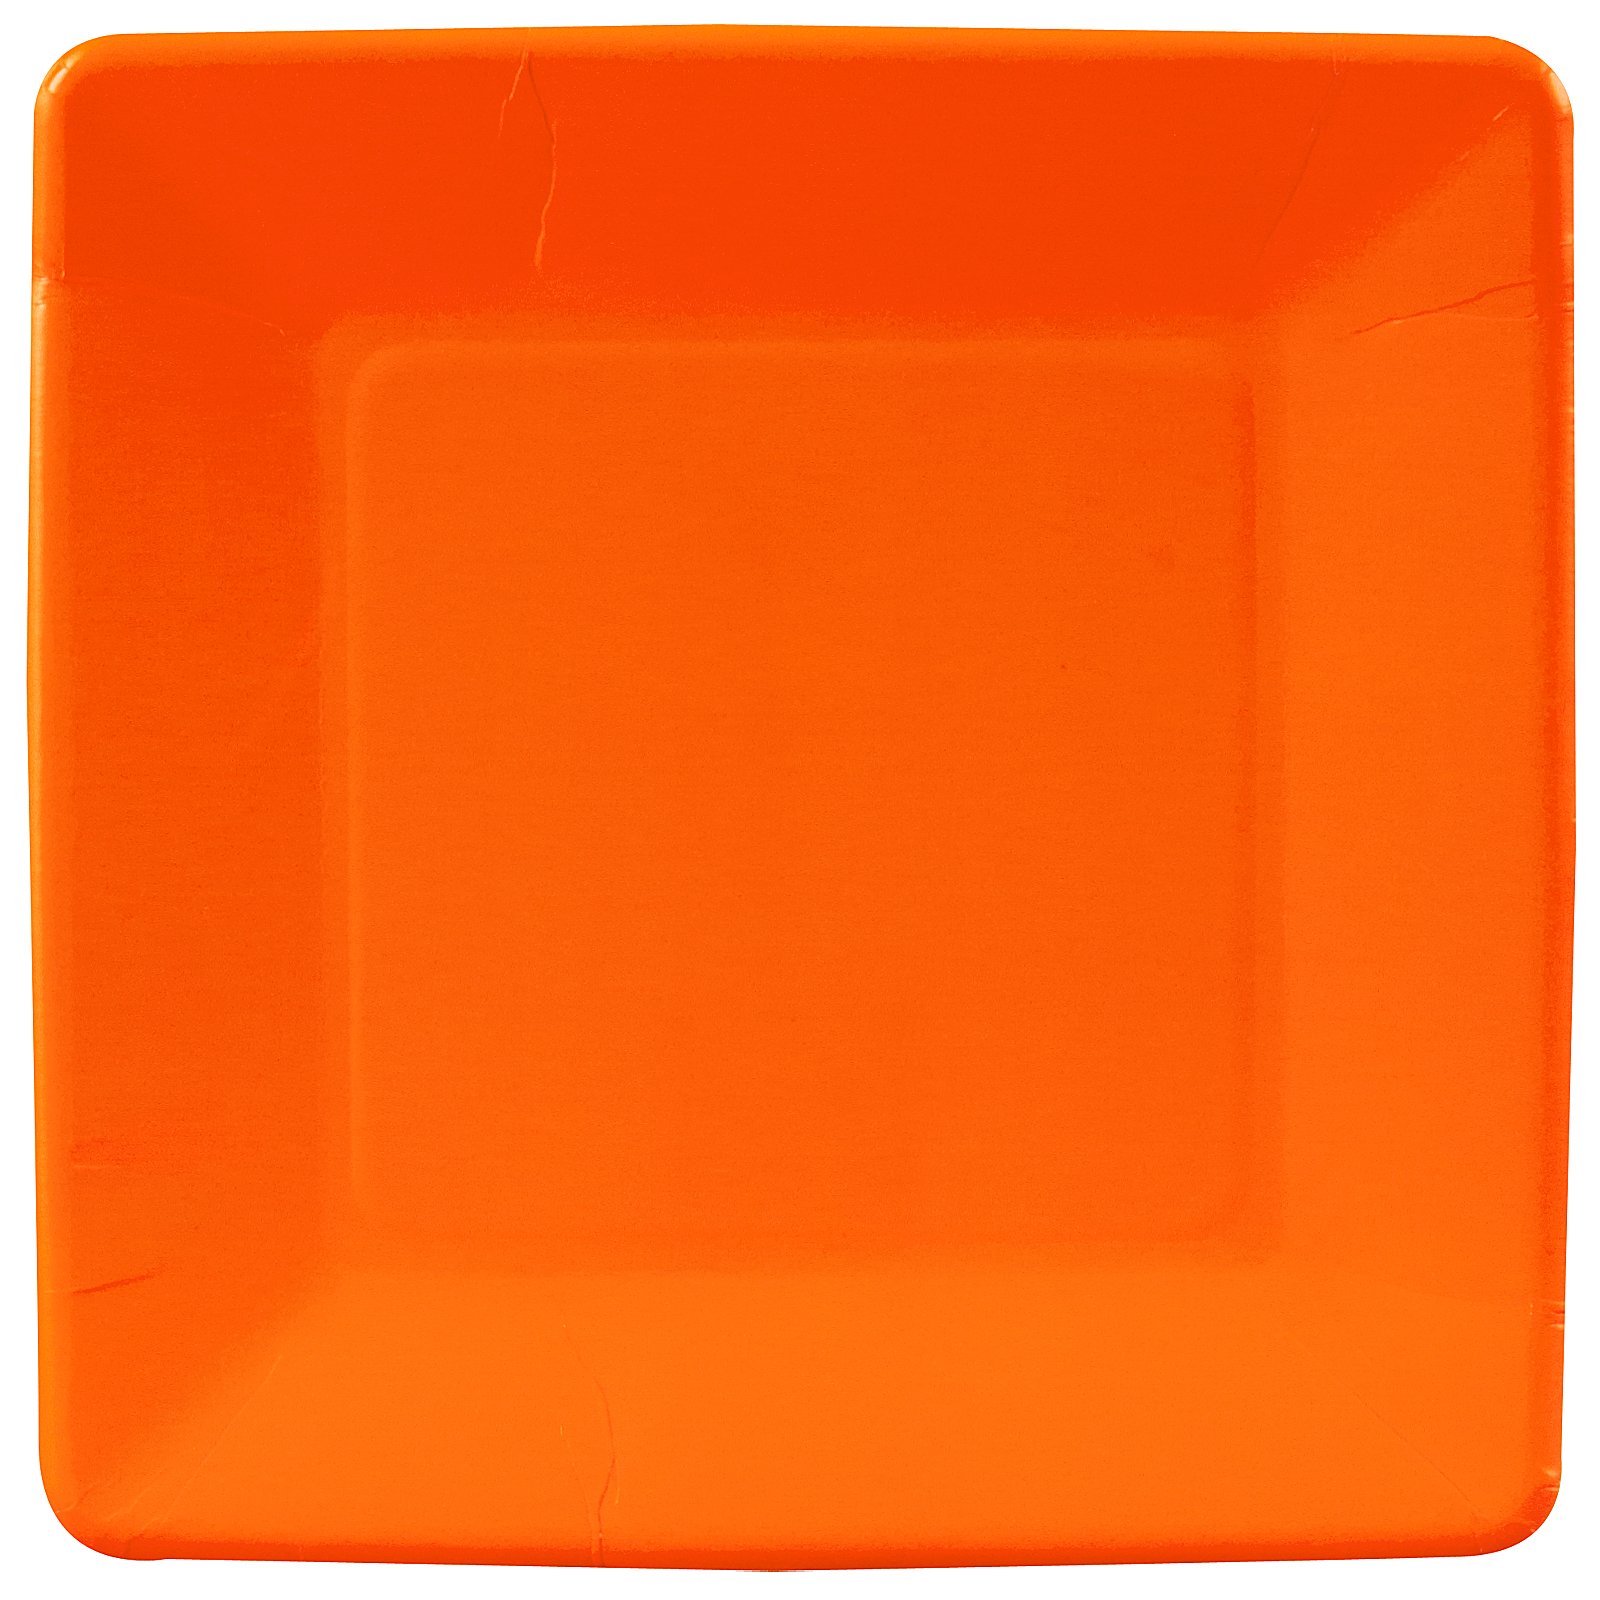 Sunkissed Orange (Orange) Square Dinner Plates (18 count) - Click Image to Close